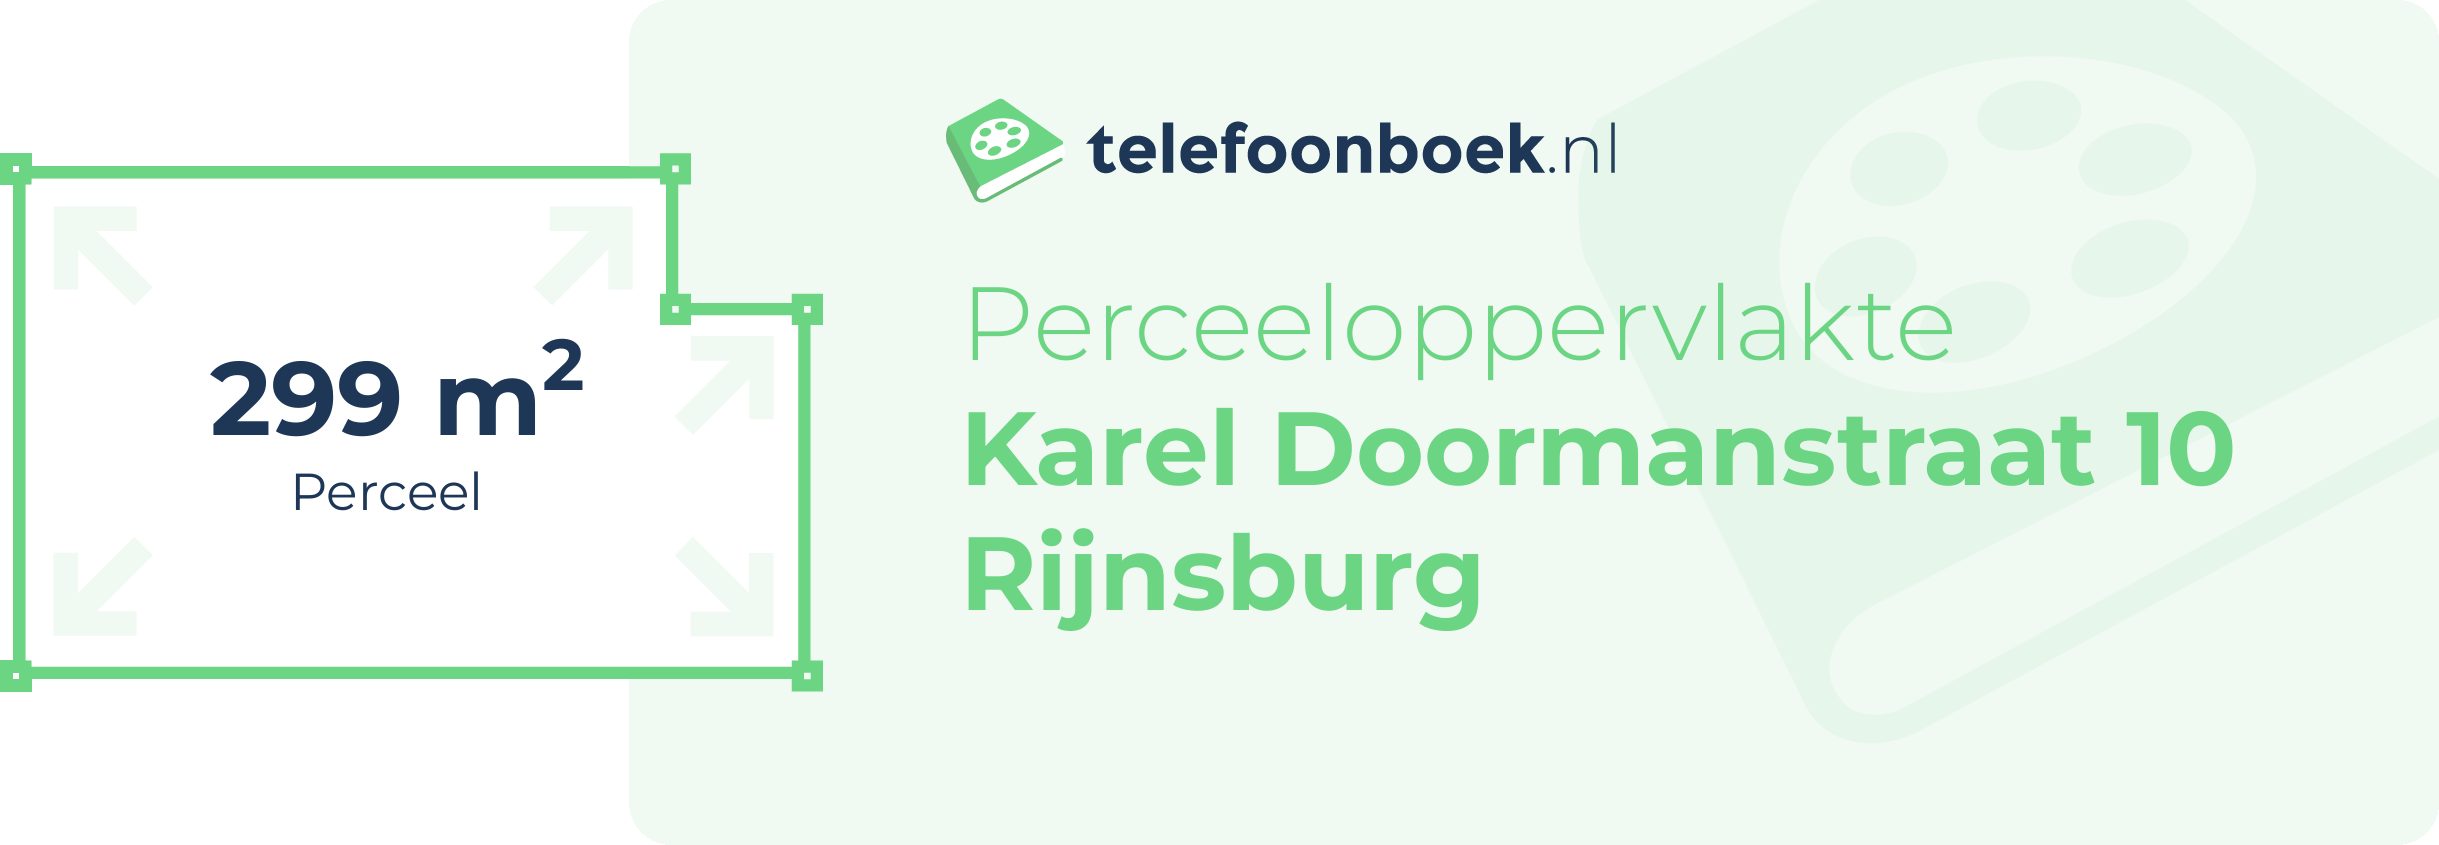 Perceeloppervlakte Karel Doormanstraat 10 Rijnsburg